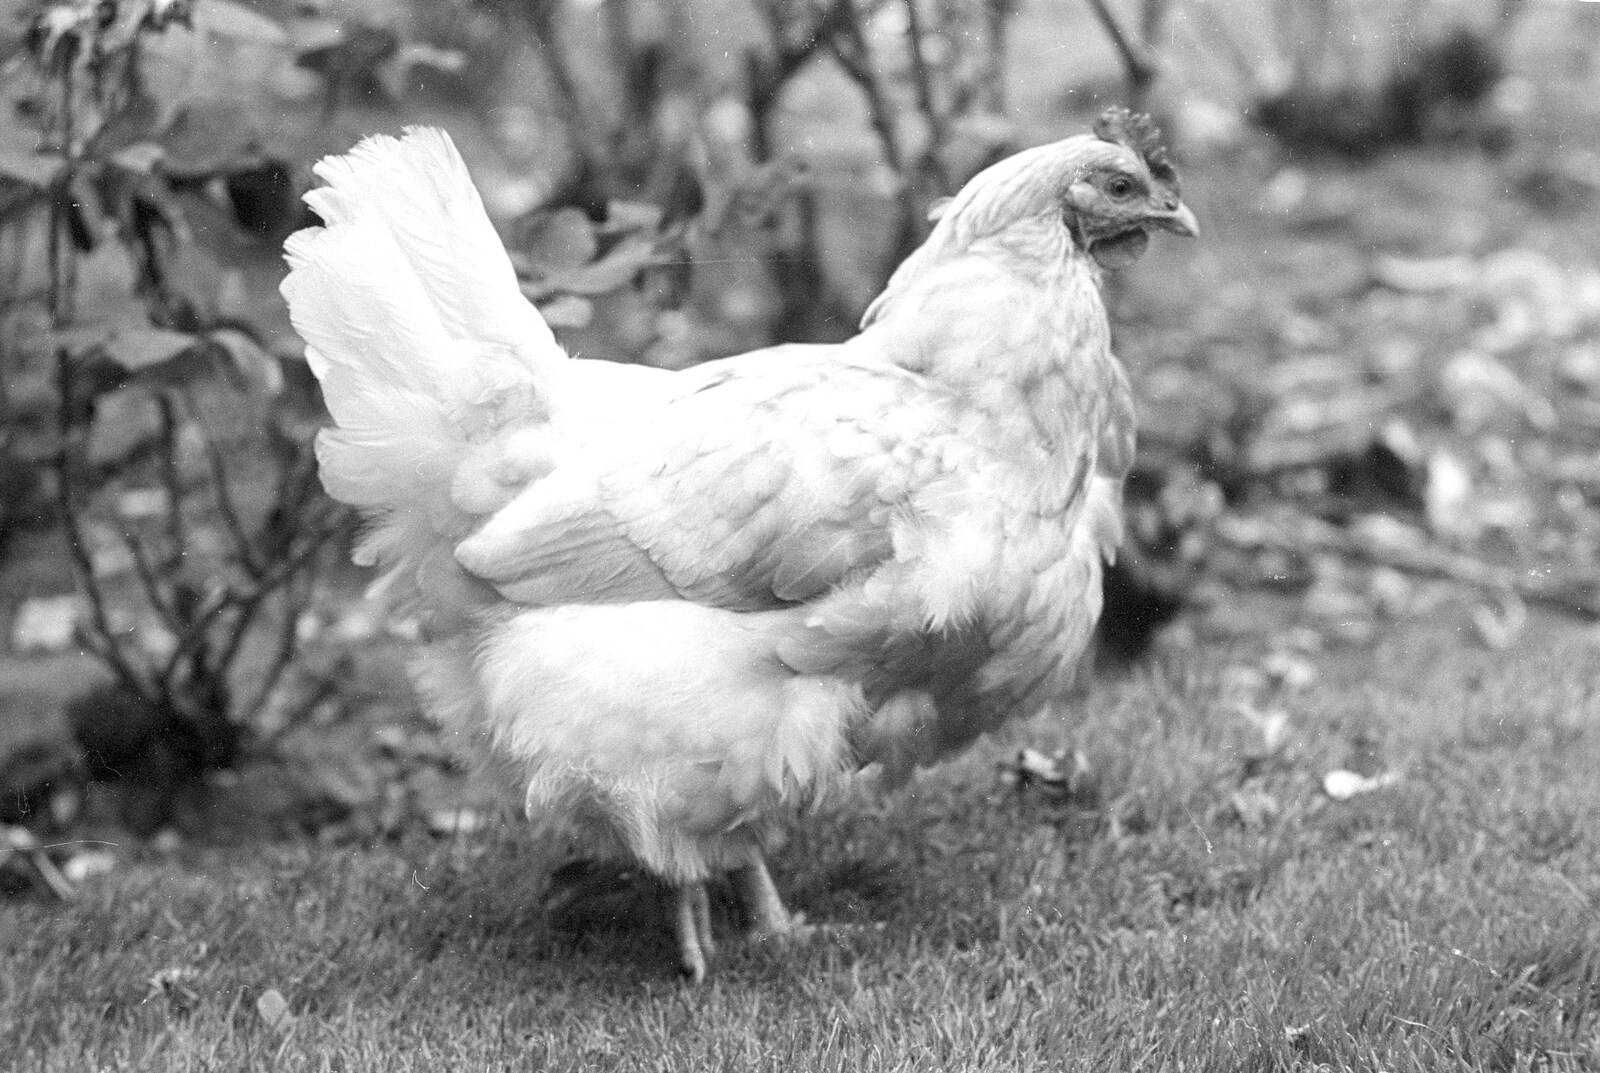 A chicken roams around from Working on the Harvest, Tibenham, Norfolk - 11th August 1992